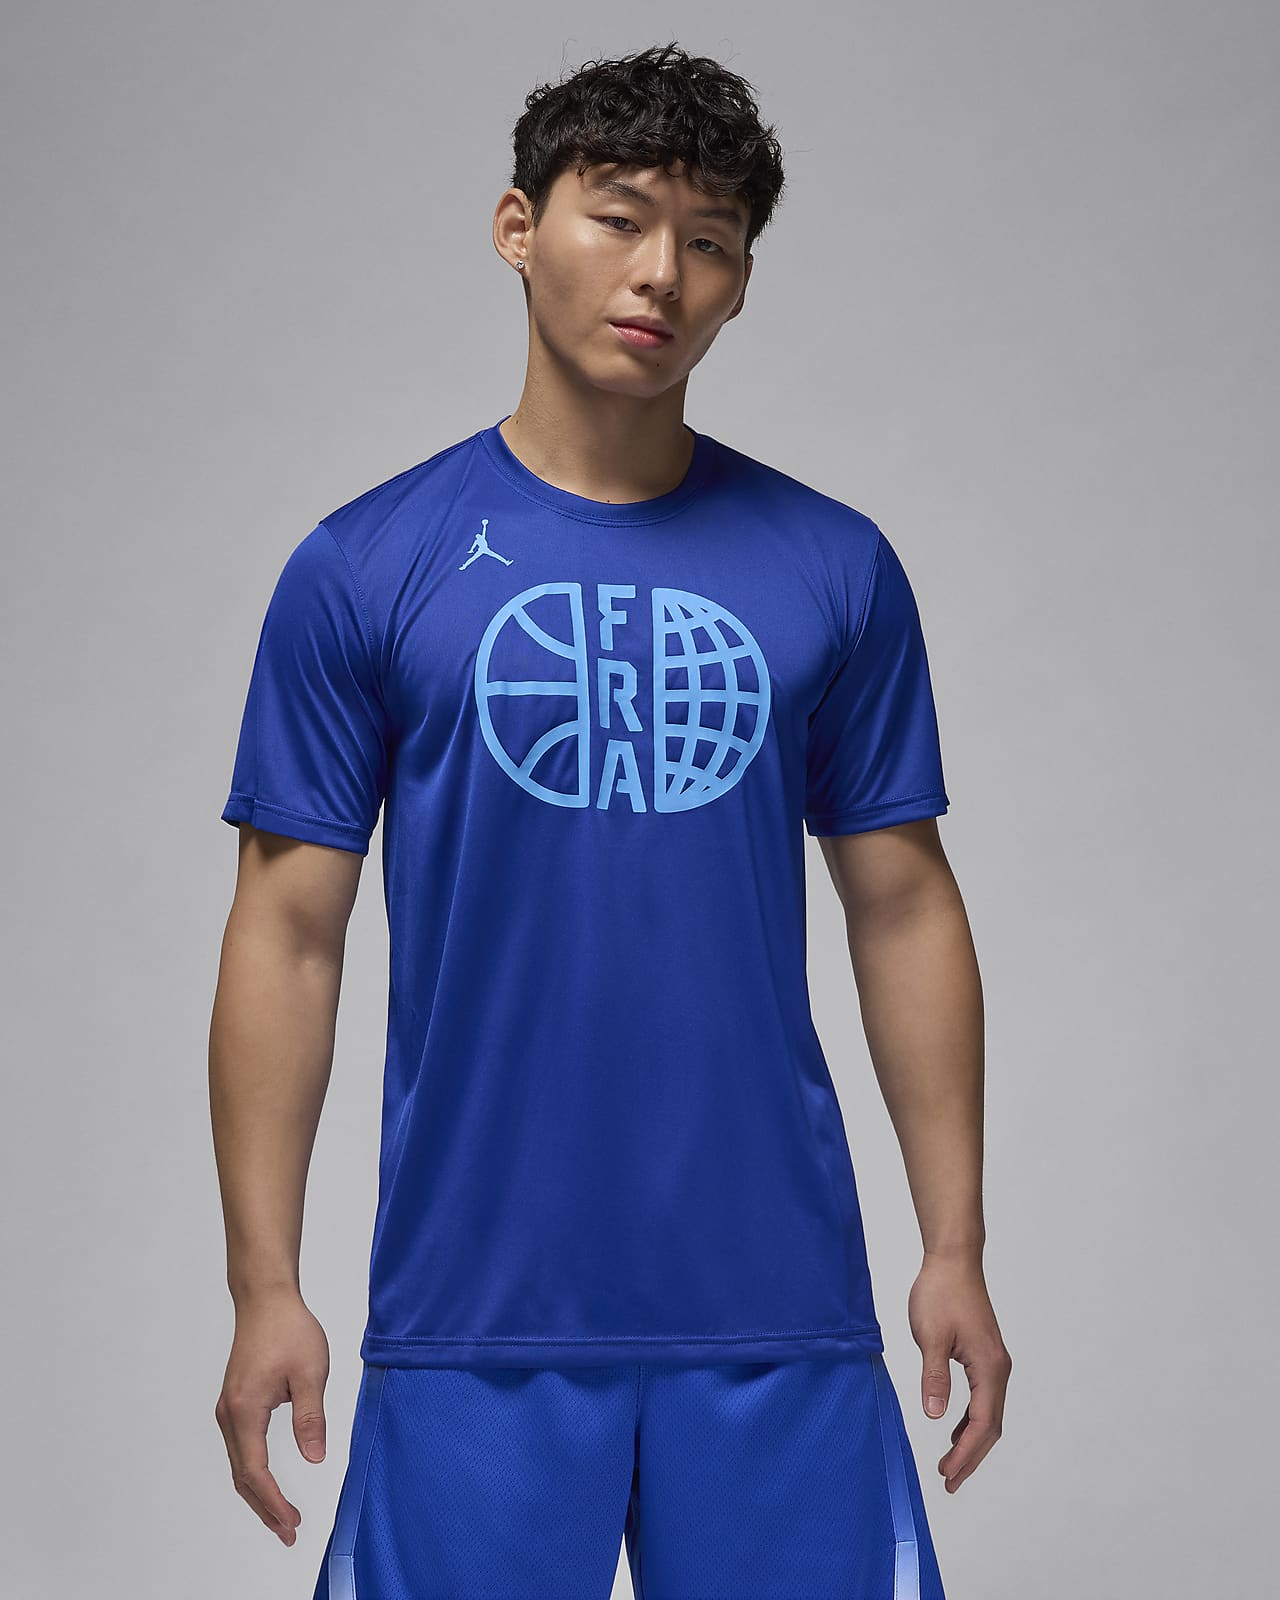 France Practice Men's Nike Basketball T-Shirt